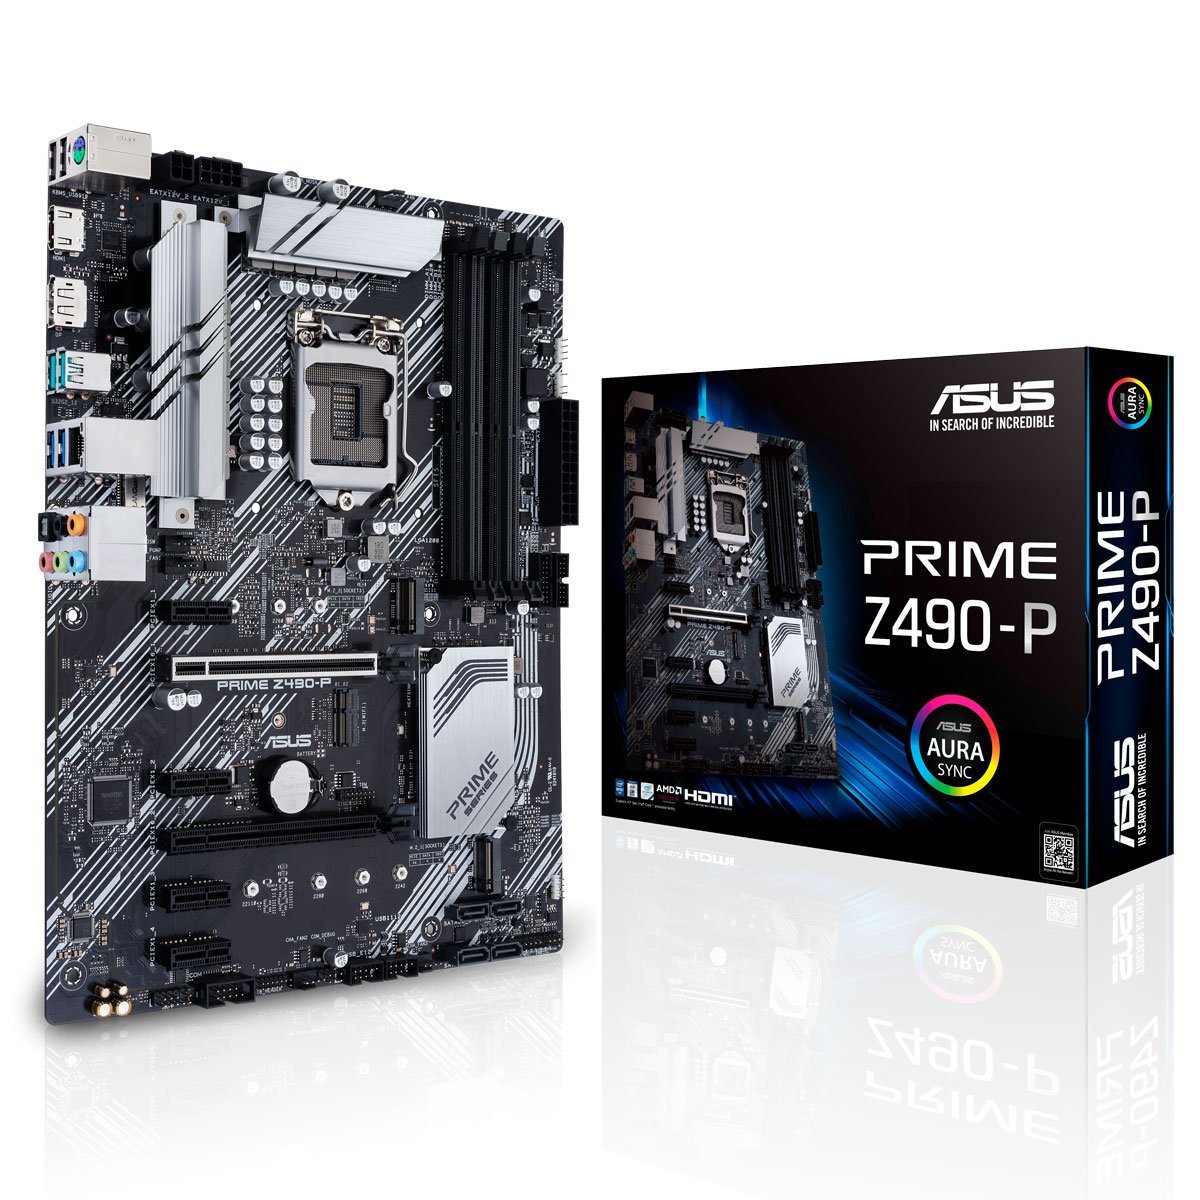 ASUS Prime Z490-P LGA1200 Motherboard - Store 974 | ستور ٩٧٤